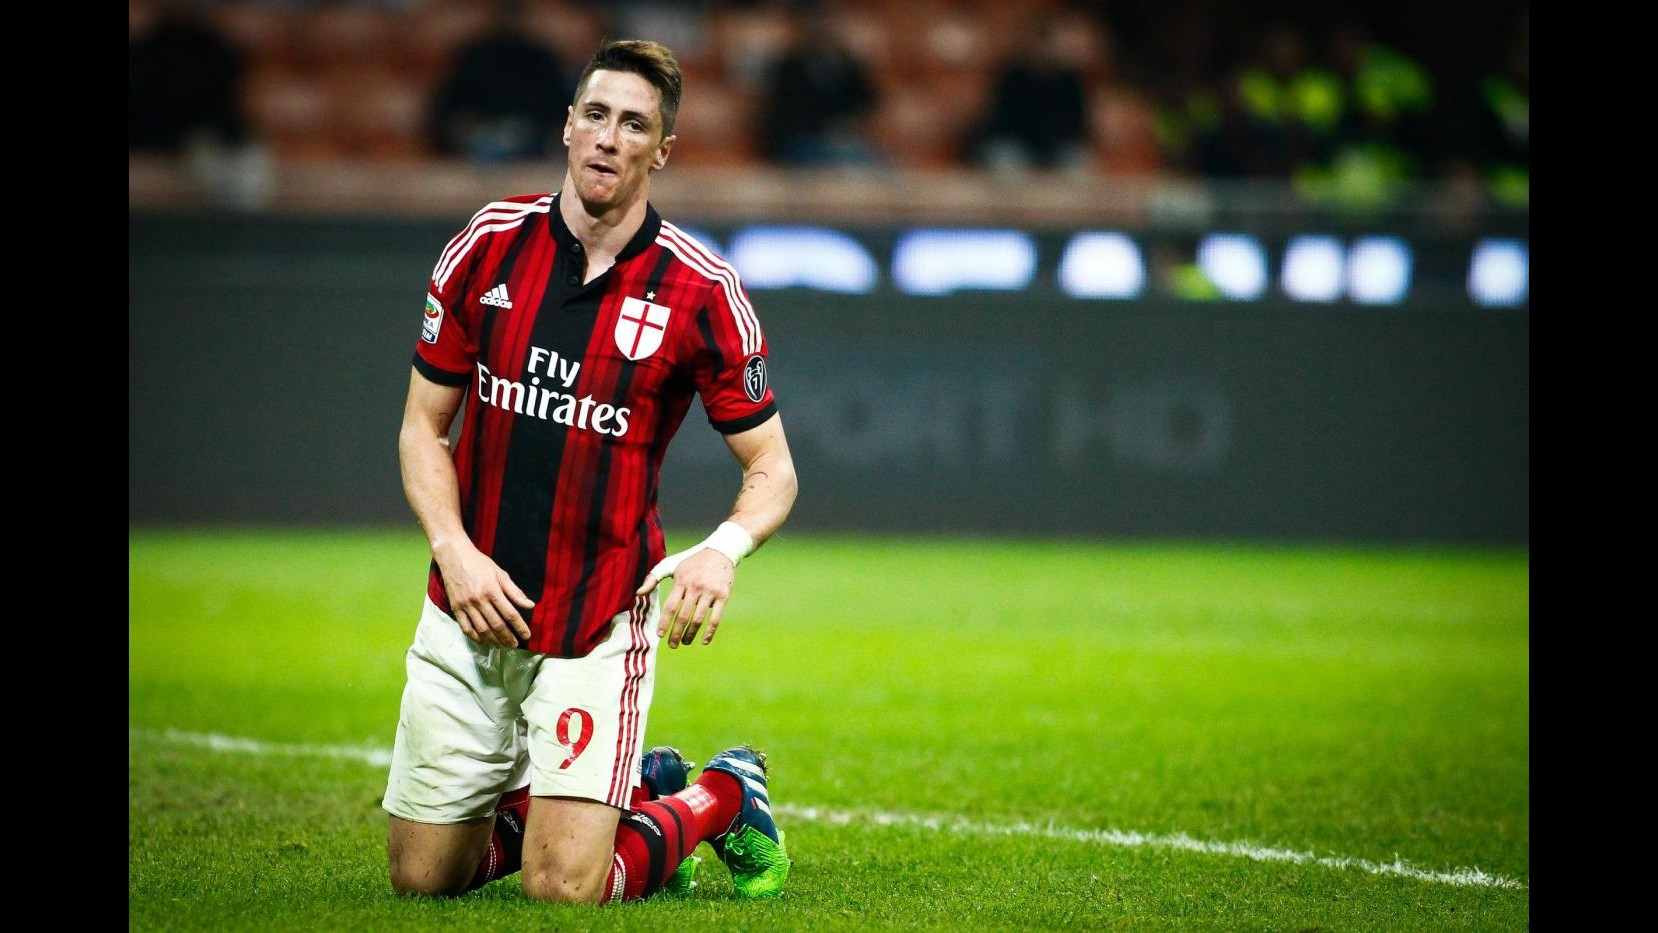 Calciomercato, dall’Inghilterra: Torres torna a Liverpool, Balotelli a Napoli